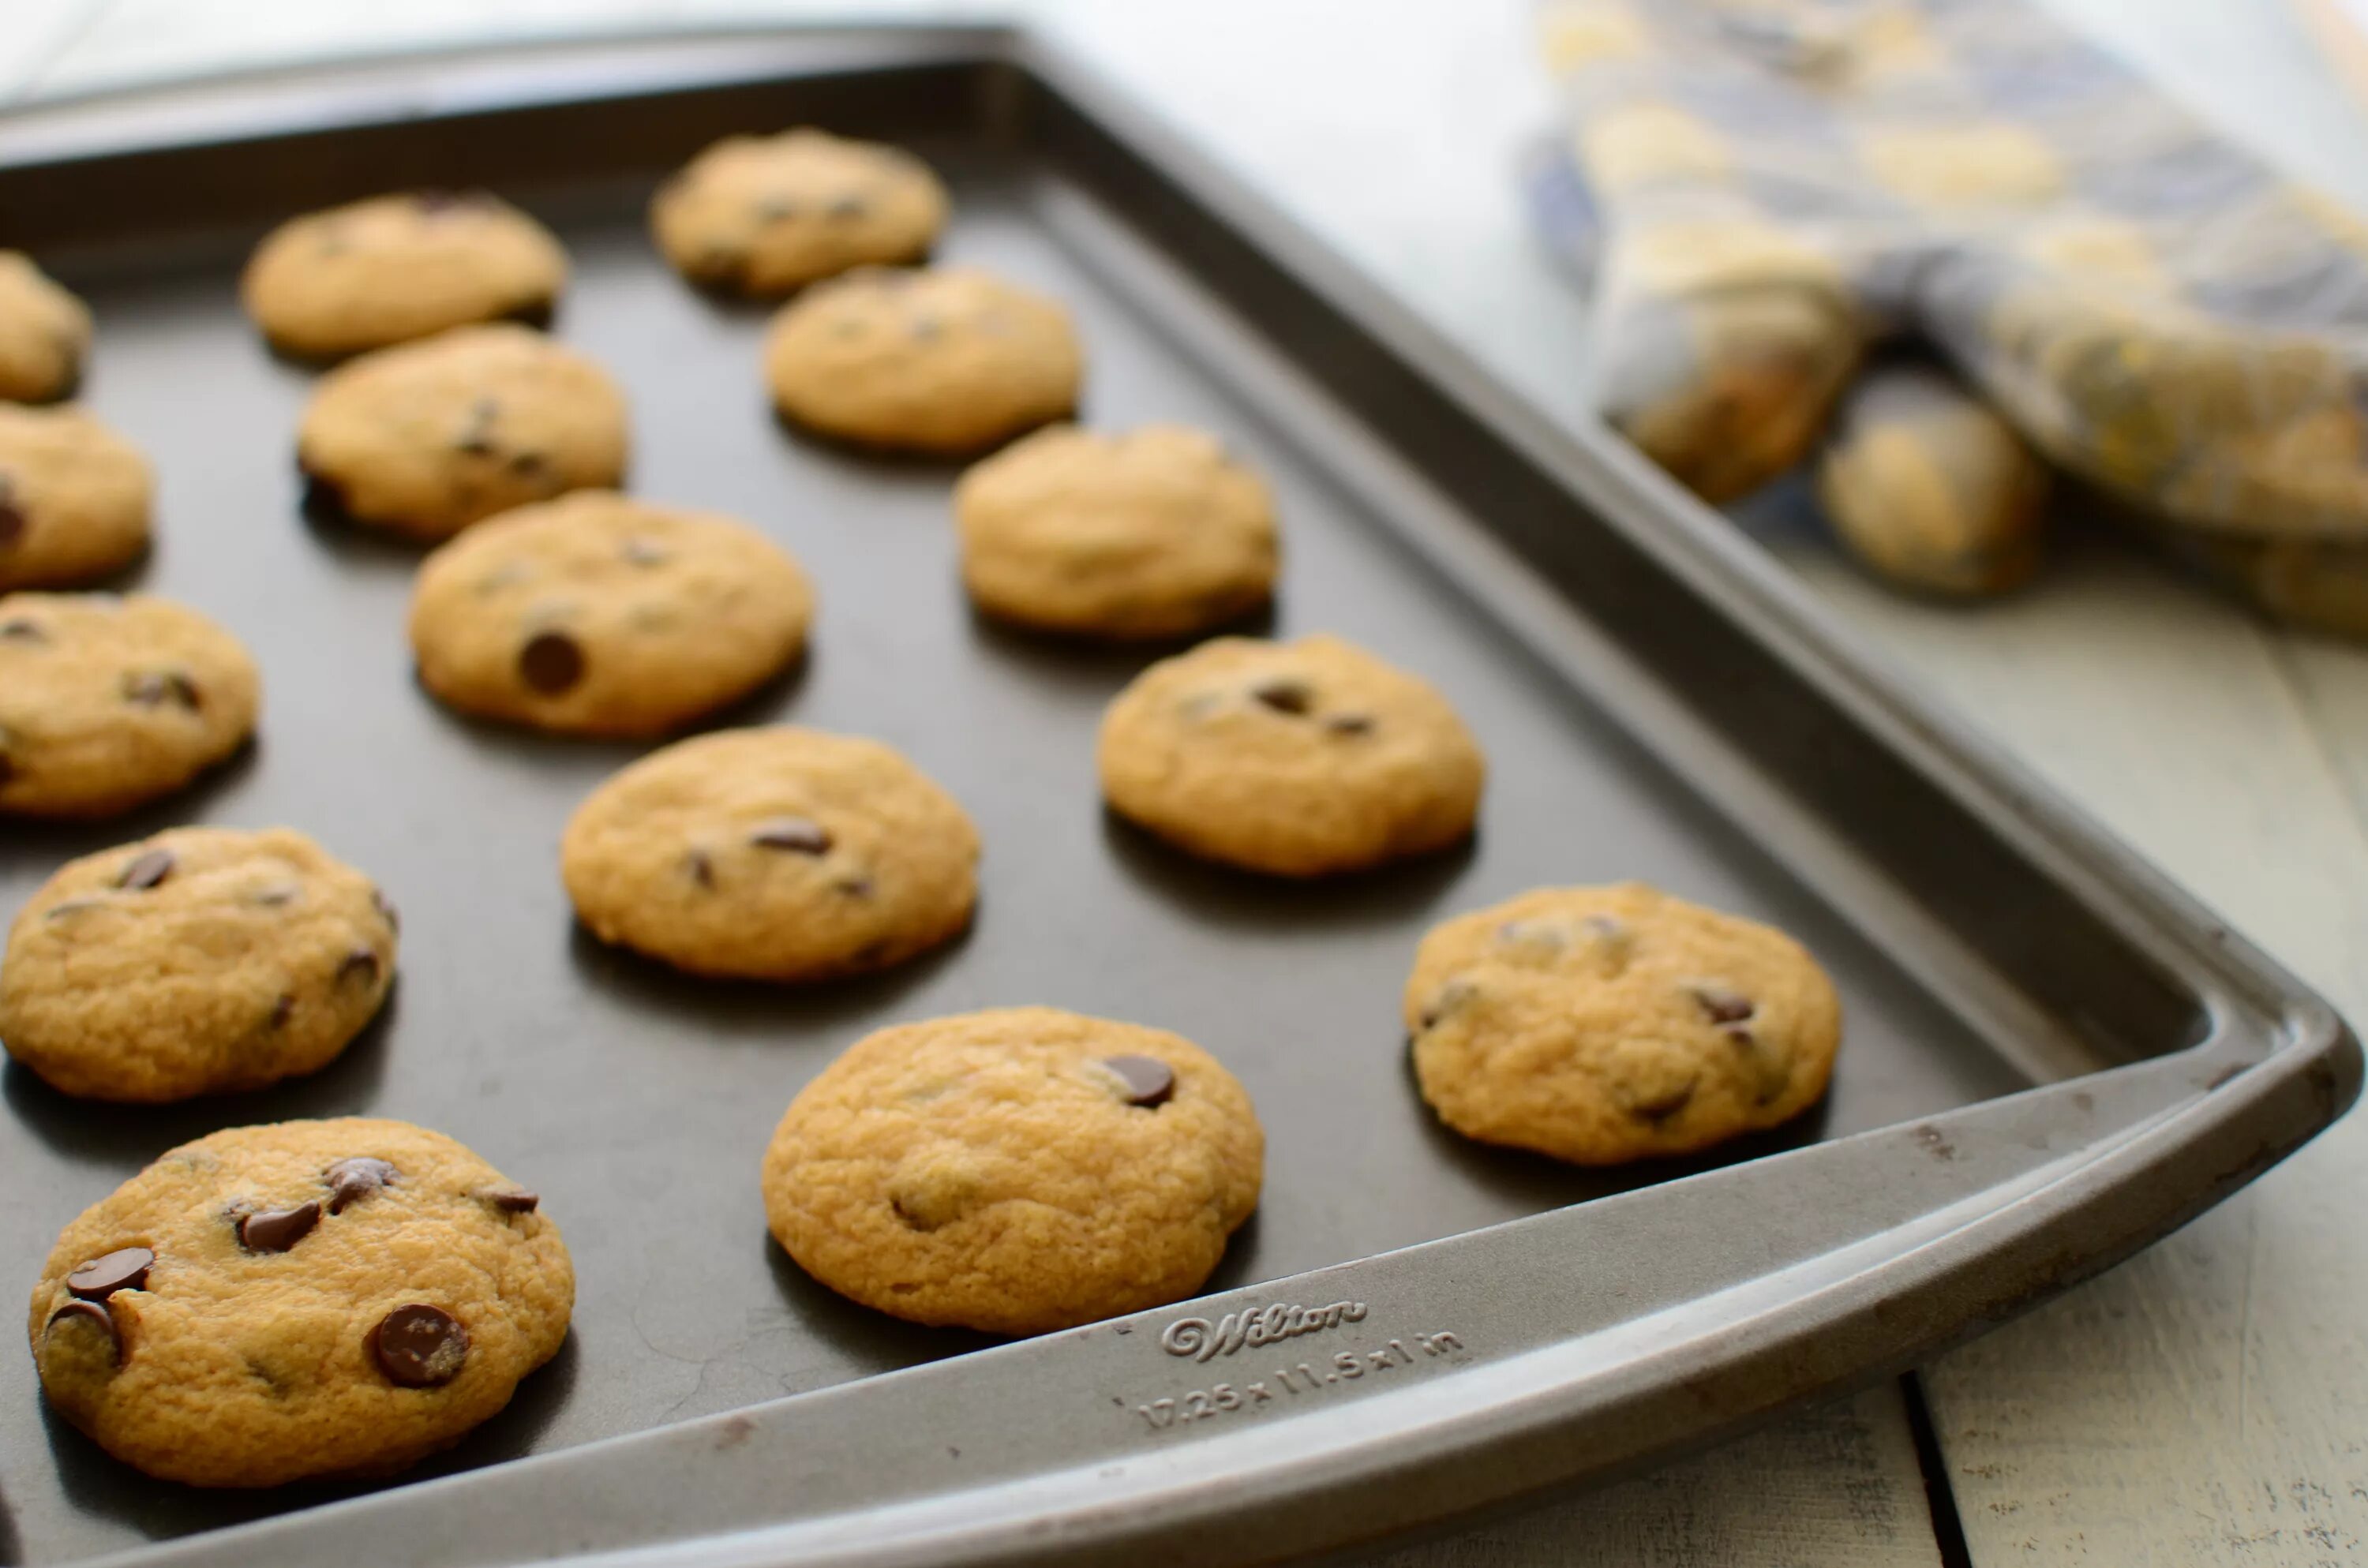 Content cookies. Шоколадное печенье. Печенье Chocolate. Chocolate Chip cookies. Cookie печенье making.